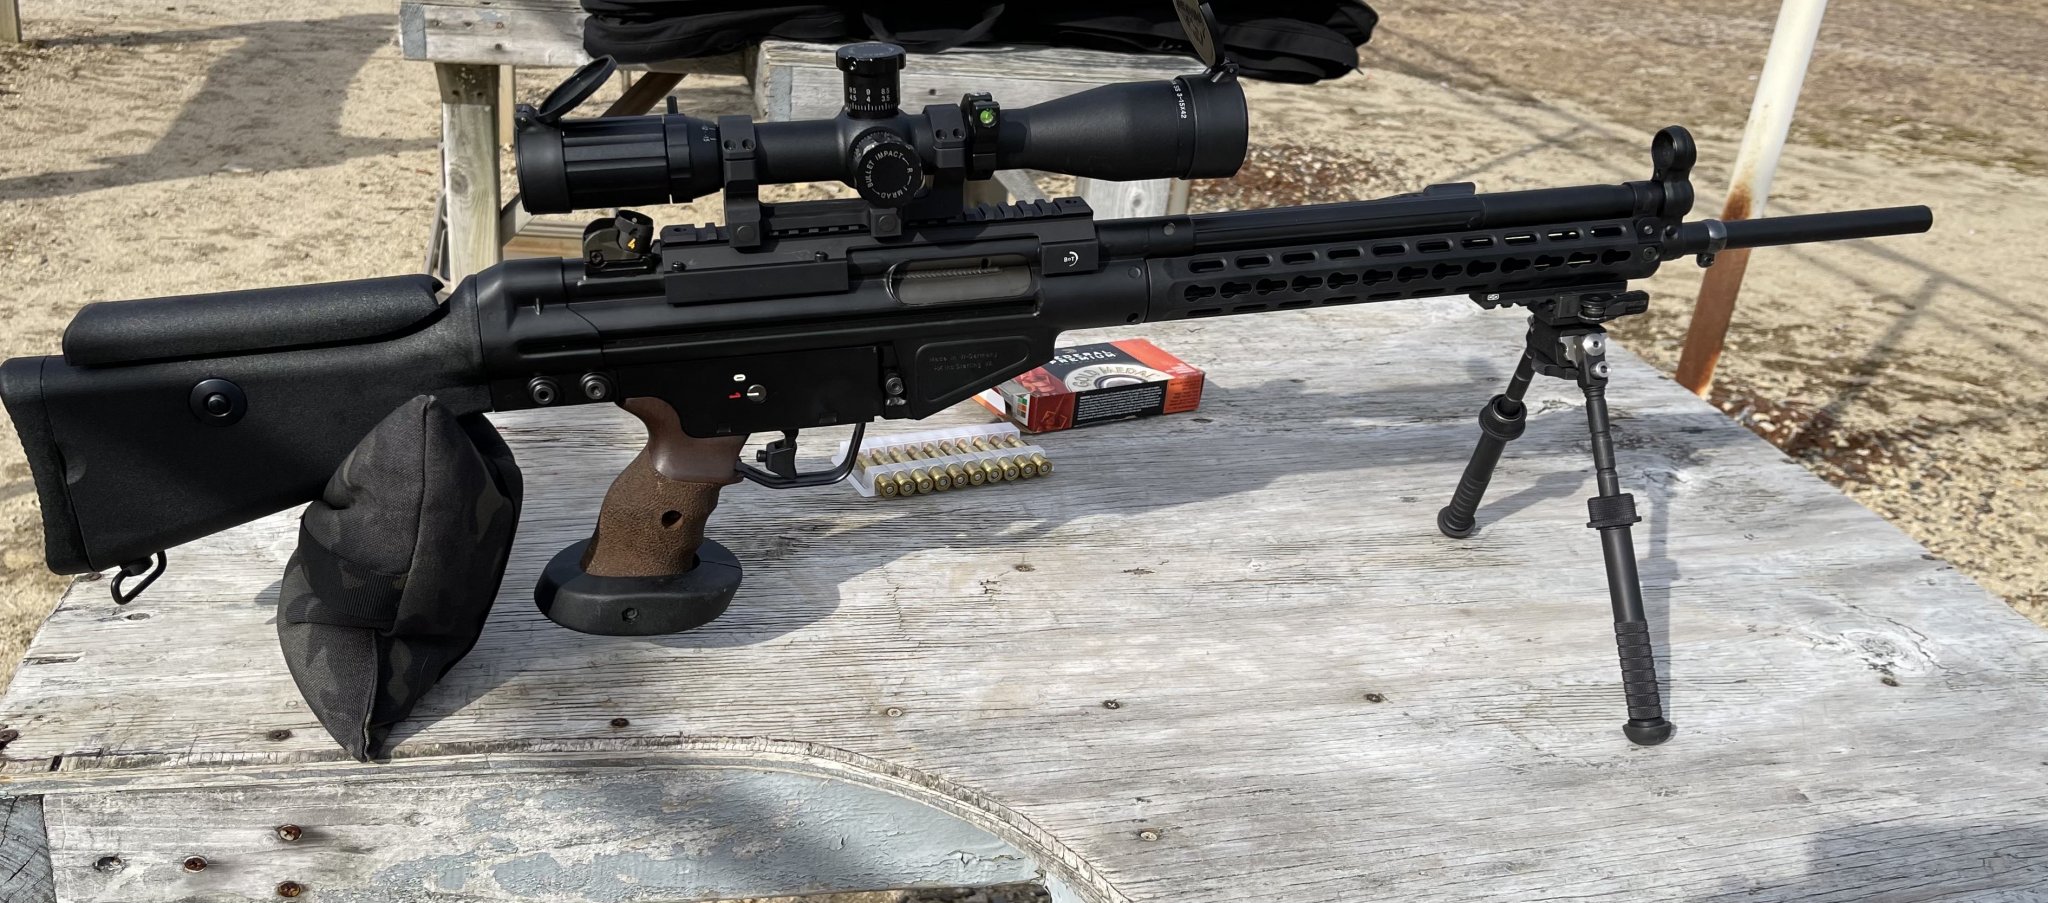 HK SR9T at the Range.jpg